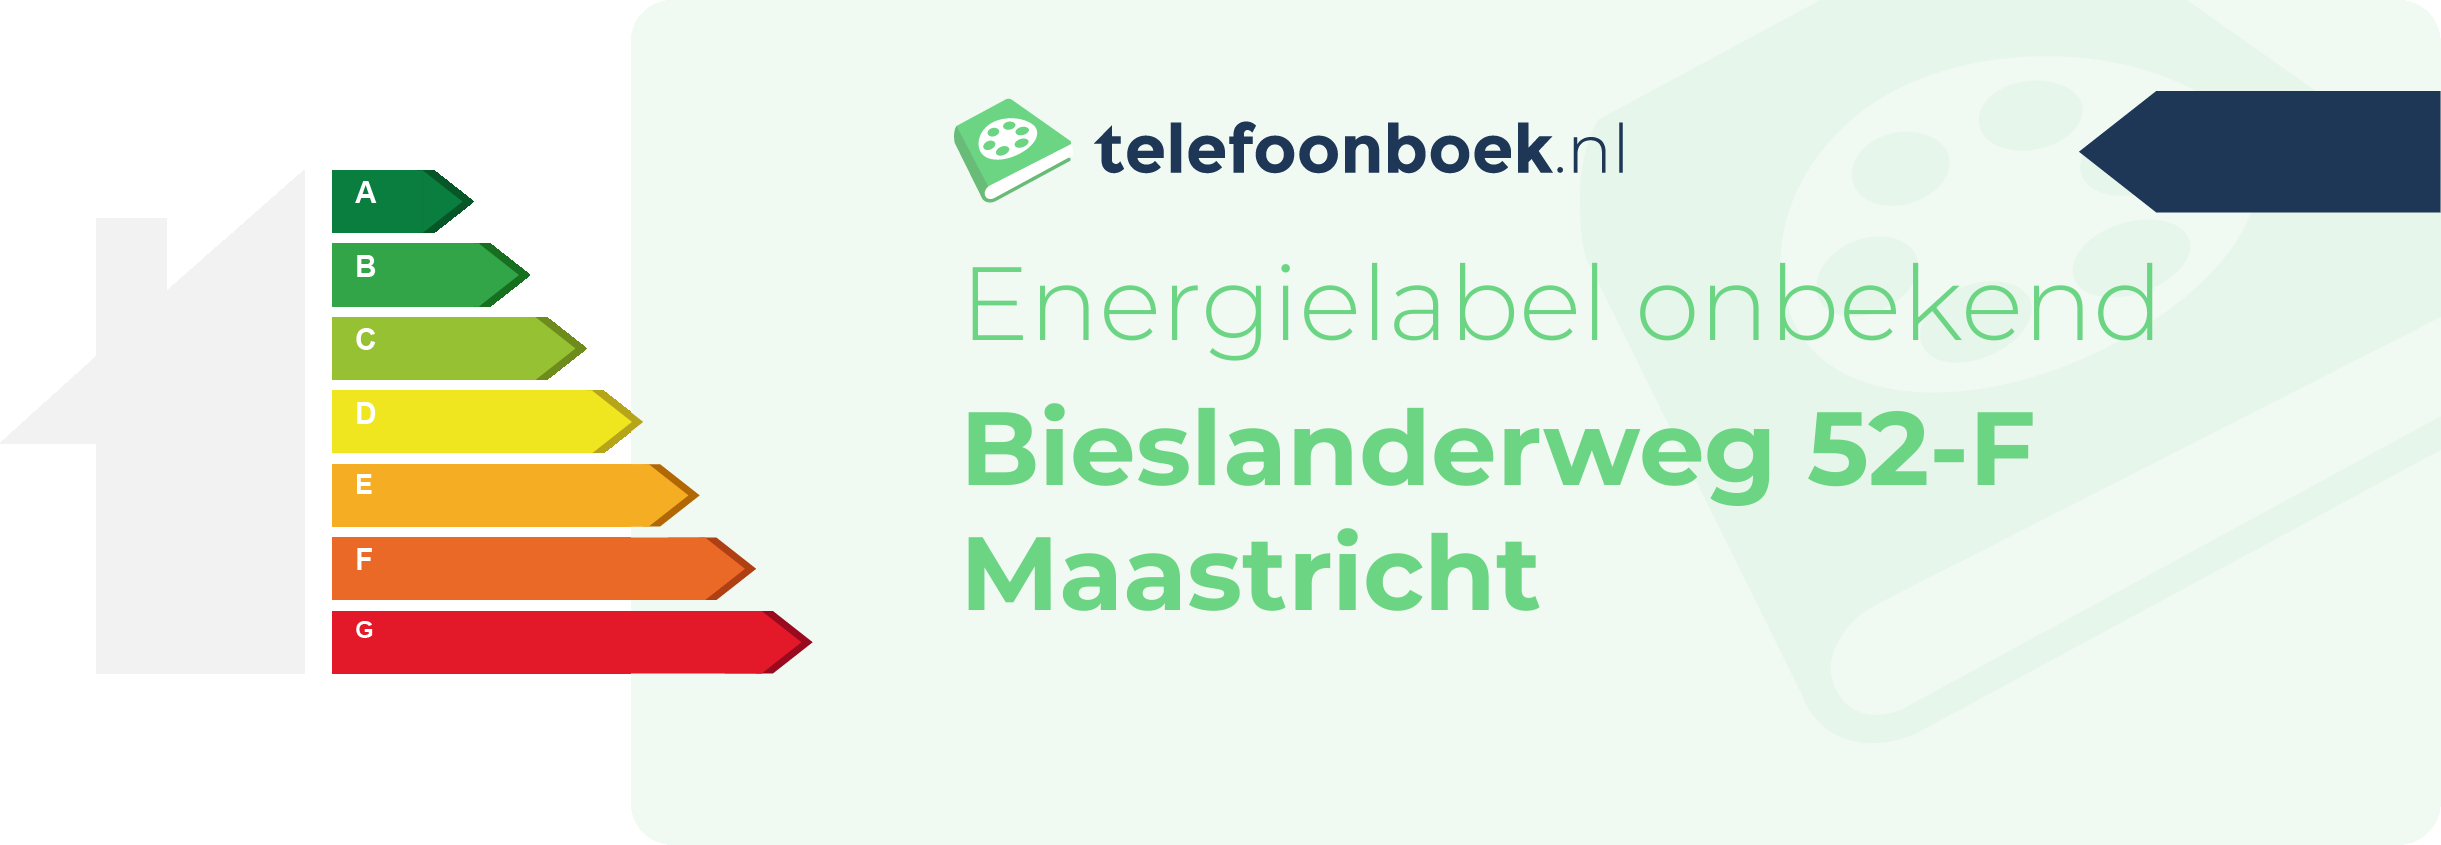 Energielabel Bieslanderweg 52-F Maastricht